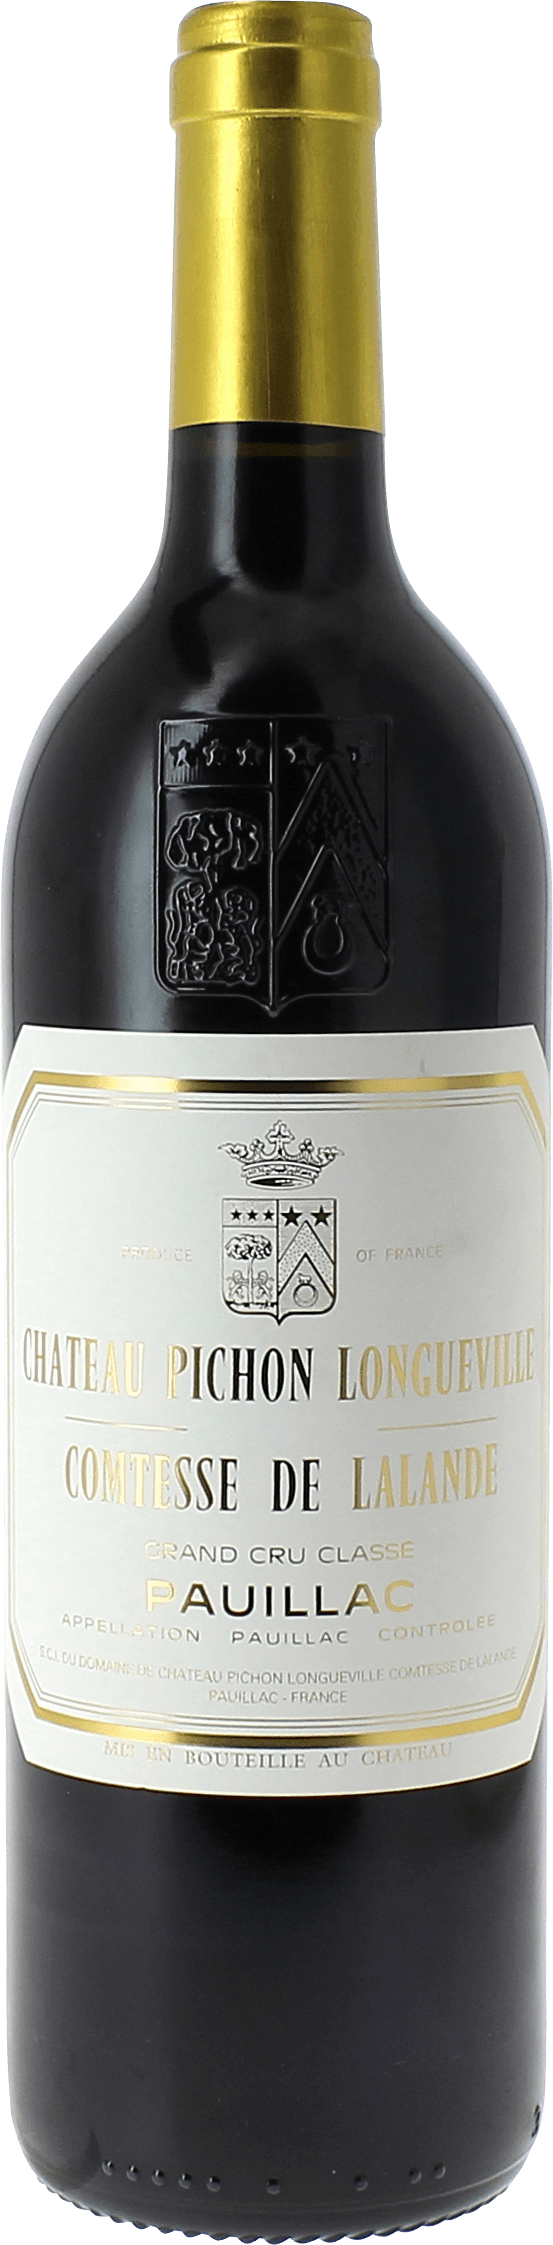 Pichon comtesse de lalande 1999 2me Grand cru class Pauillac, Bordeaux rouge